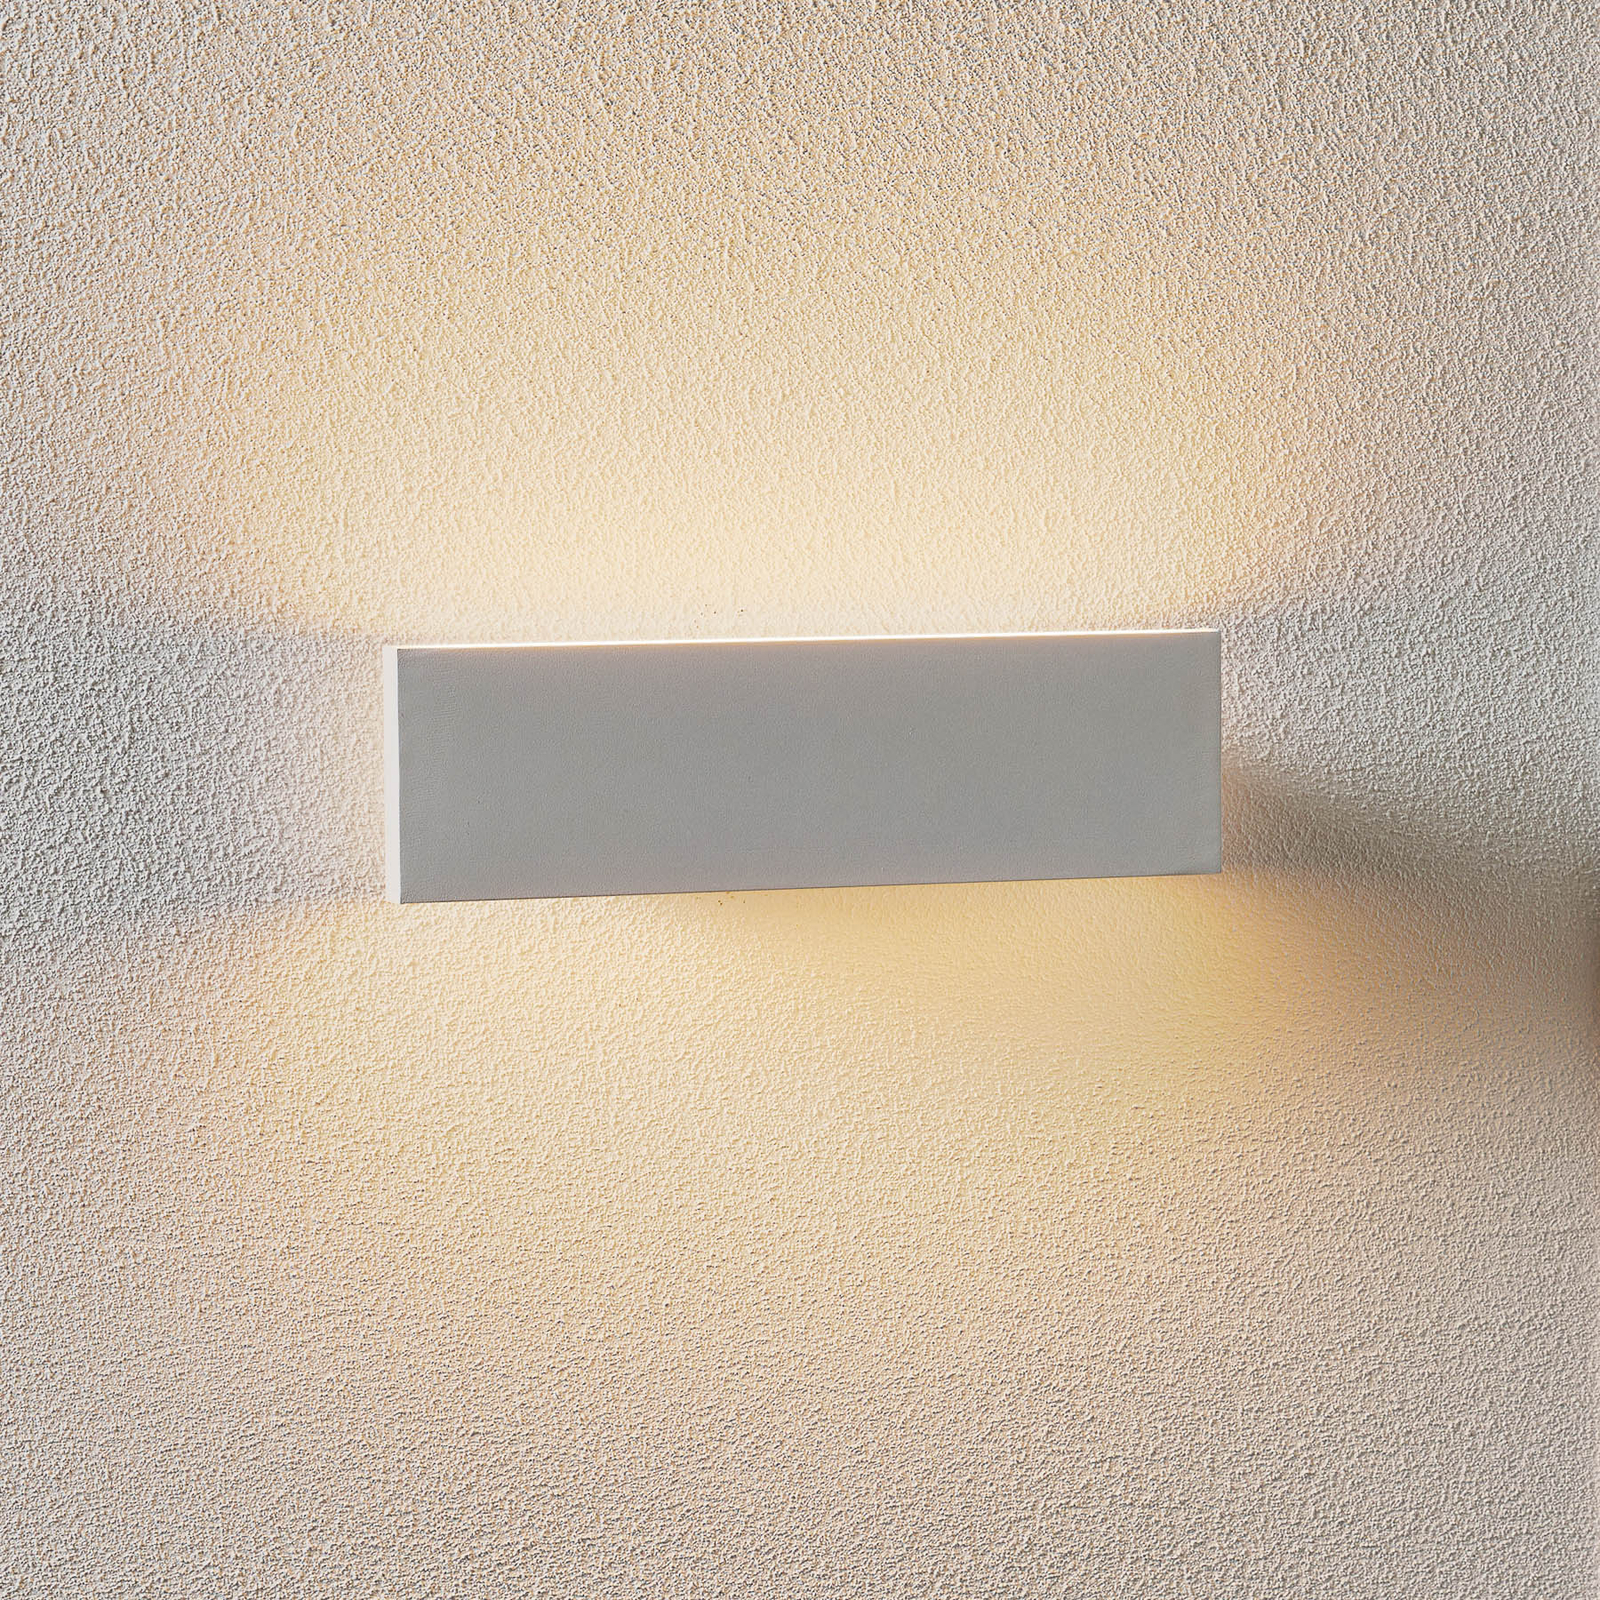 Nástěnné LED světlo Concha 28 cm, bílé